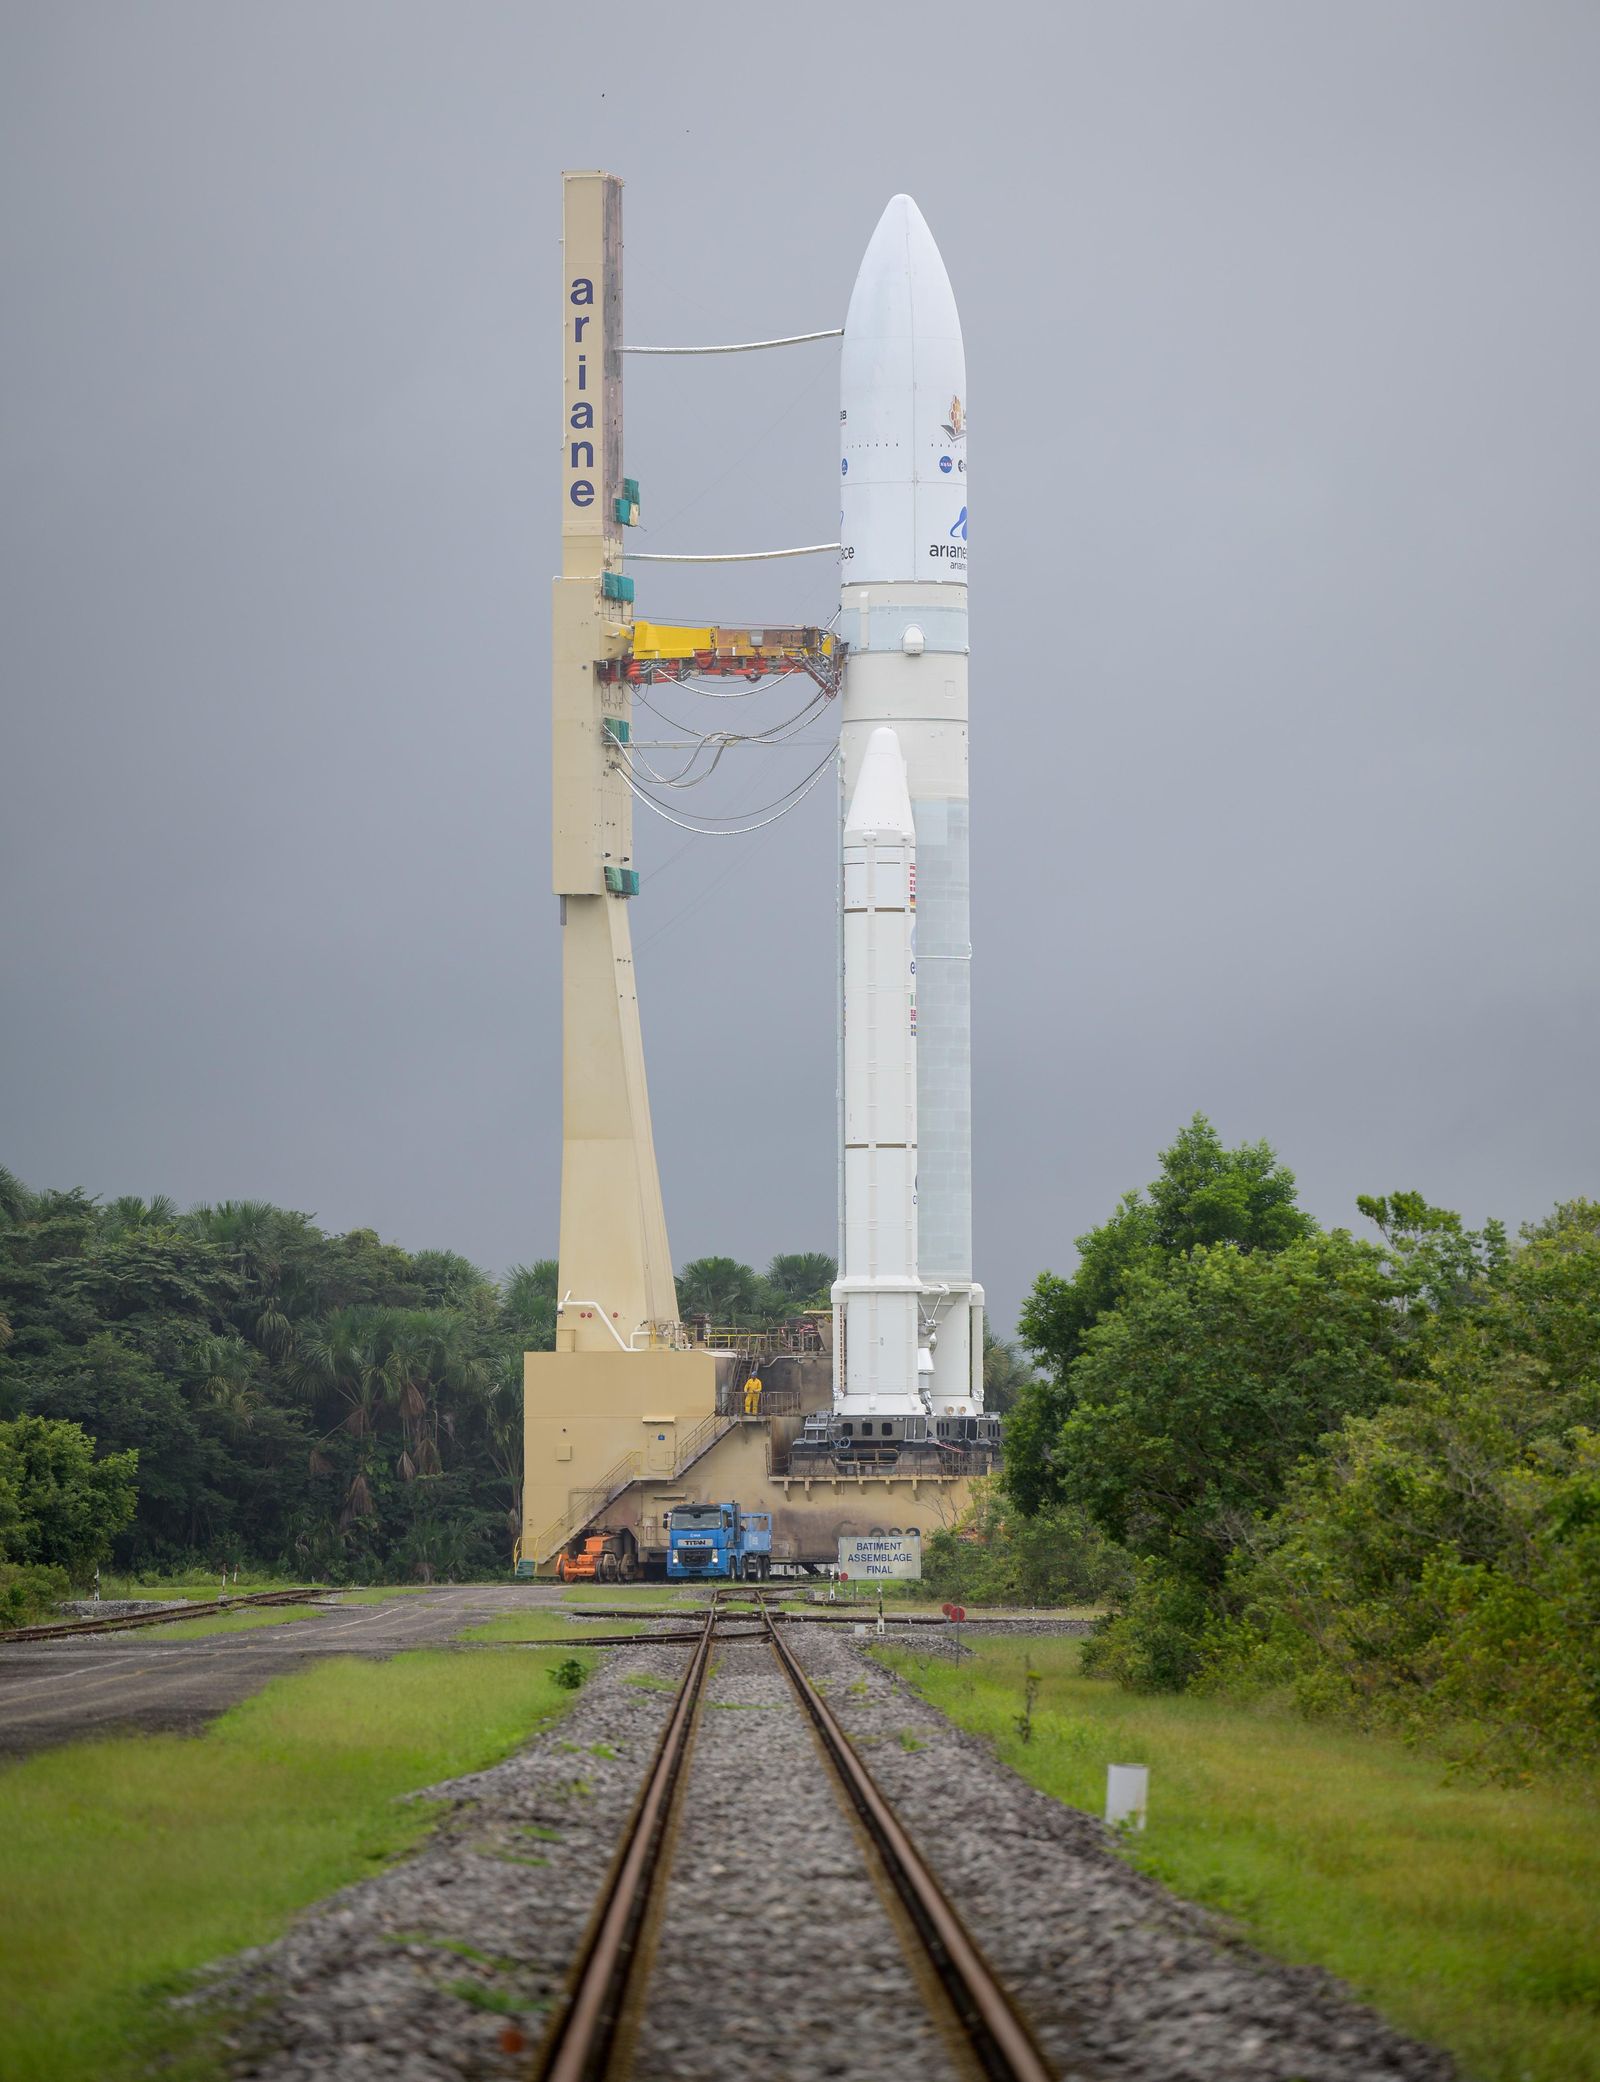 اكتمال تنصيب صاروخ أريان 5 وتلسكوب جيمس ويب على منصة الإطلاق - 23 ديسمبر 2021 - NASA